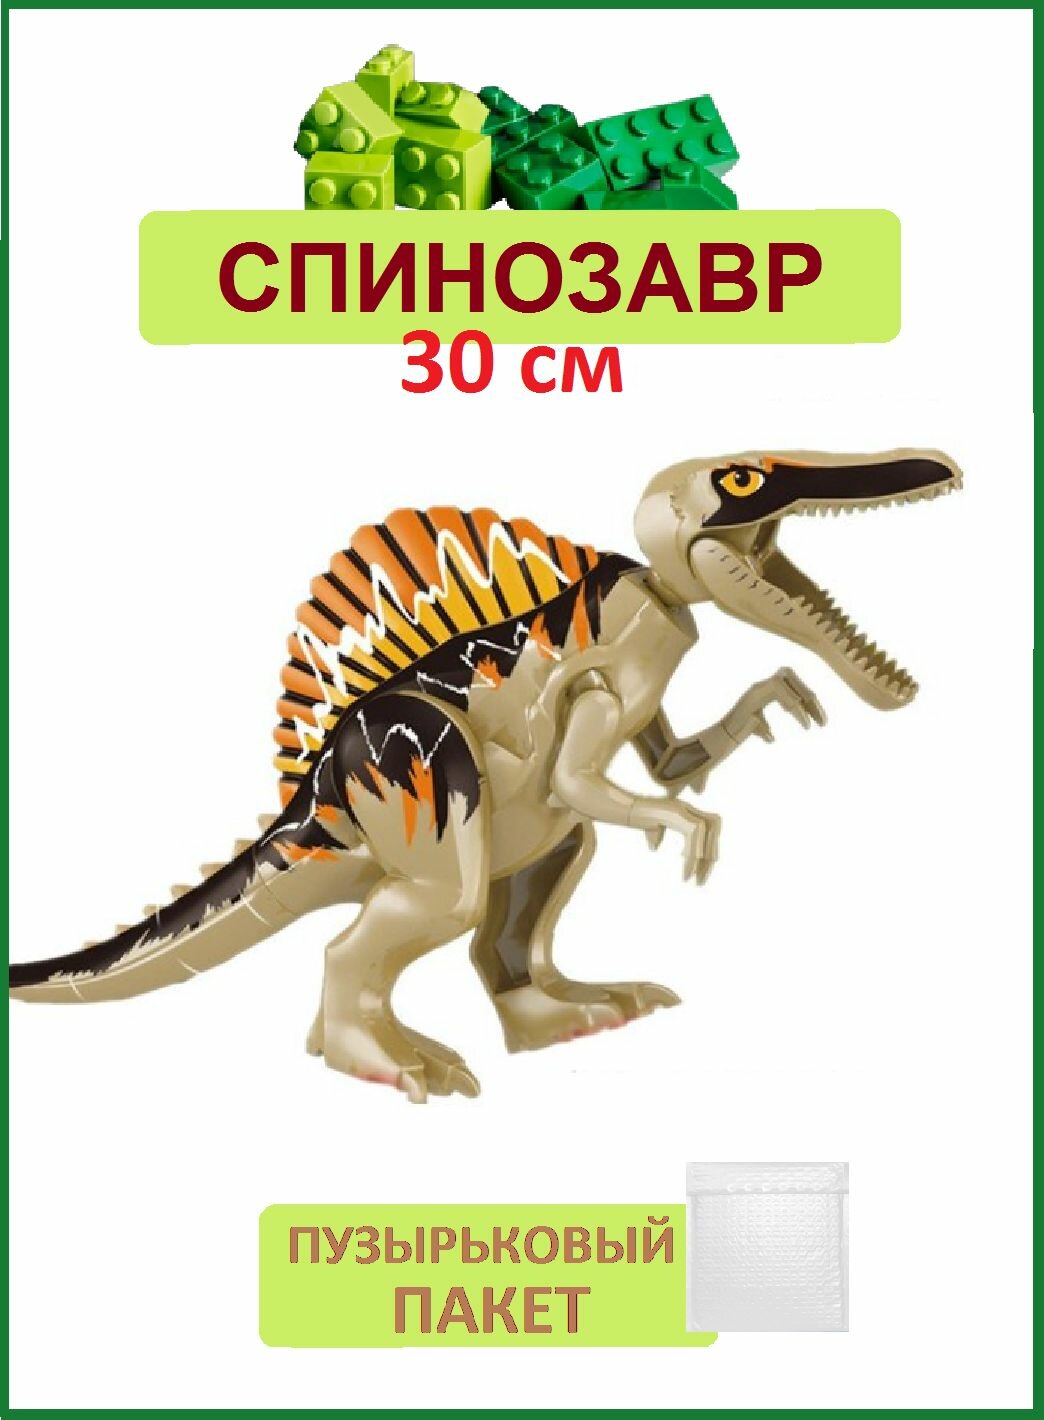 Спинозавр большой коричневый, 29 см, Динозавр фигурка конструктор, Парк Юрского периода